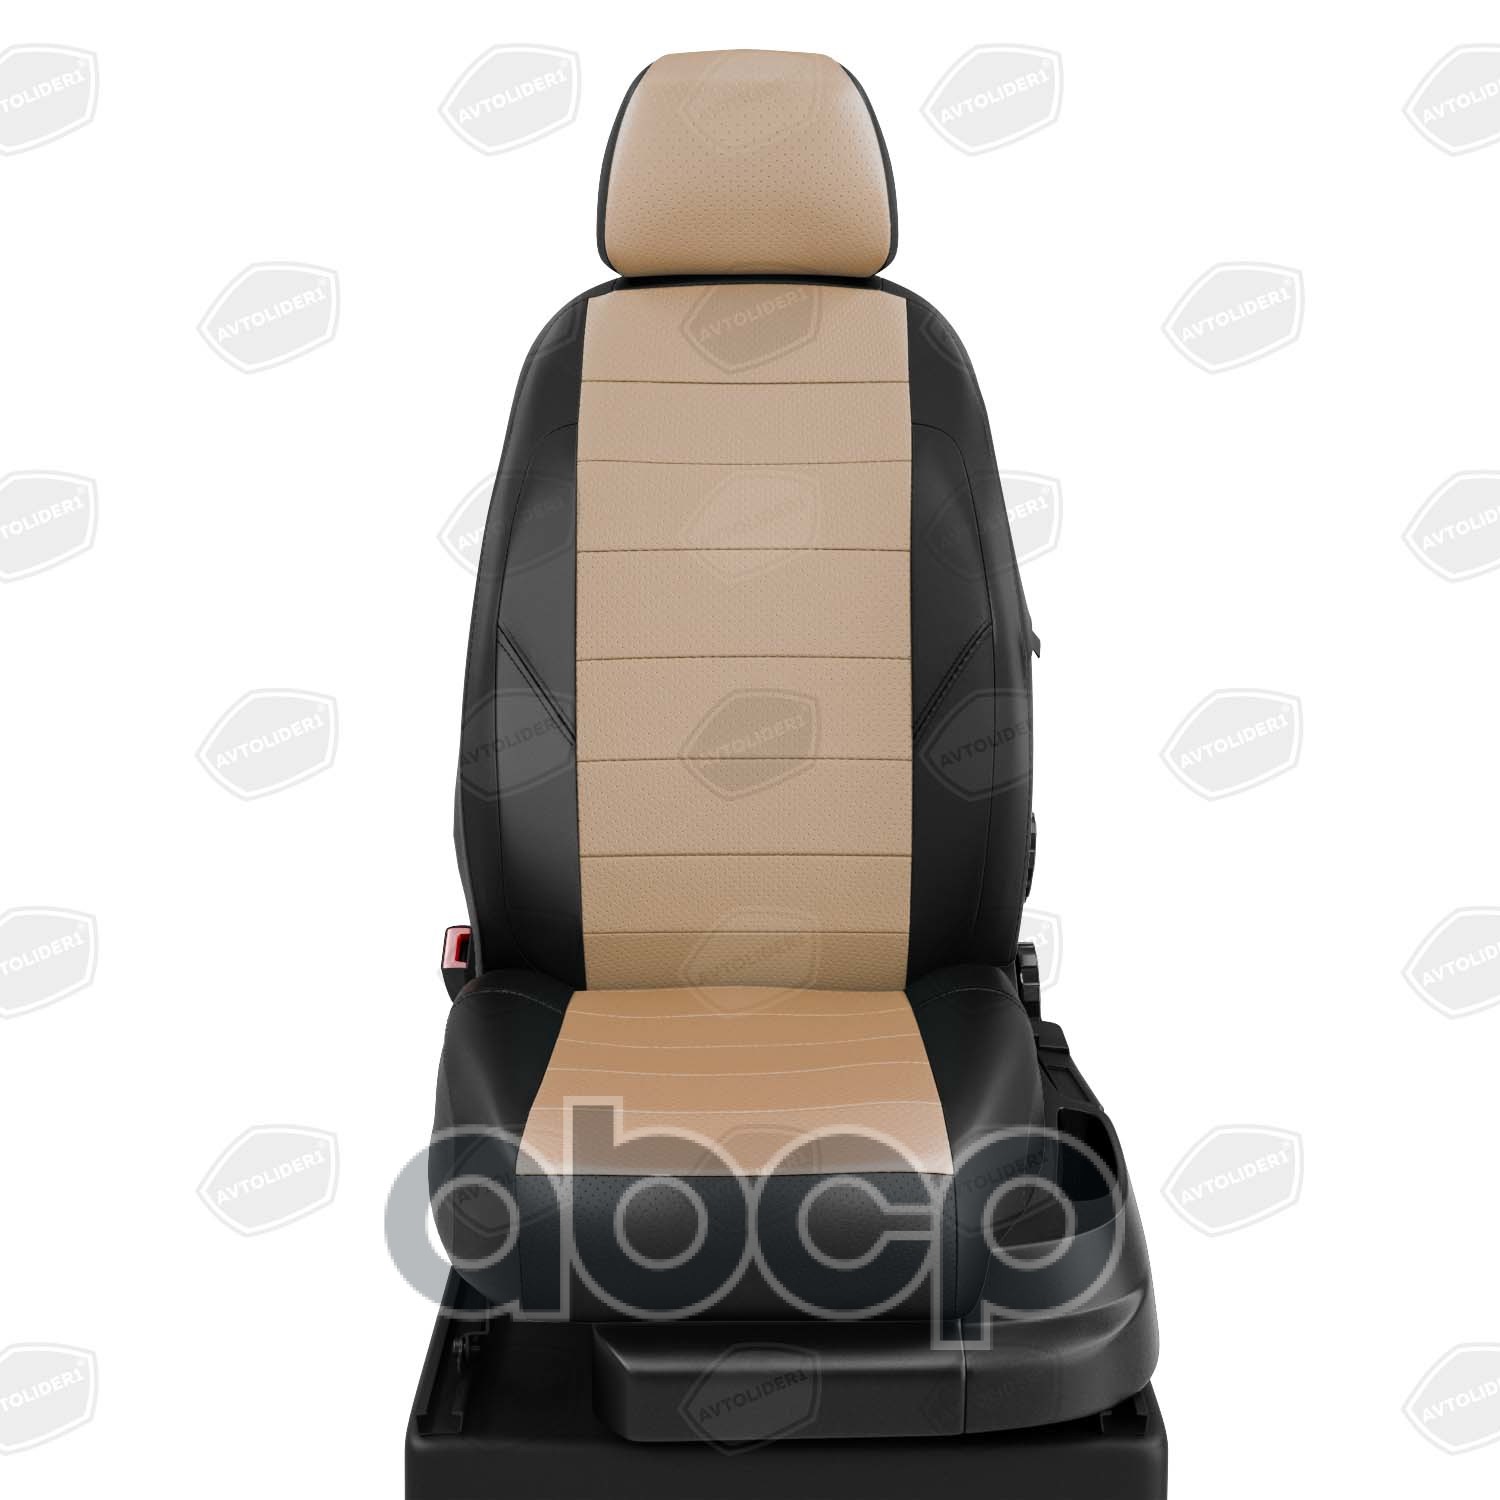 FD130503EC04 АВТОЛИДЕР Авточехлы для Ford Mondeo 3 с 2000-2007г. седан, хэтчбек, универсал RECARO (передние сидушки с выступом под колени). Задняя спинка 40 на 60, сиденье единое. Задний подлокотник (молния), 5-подголовников